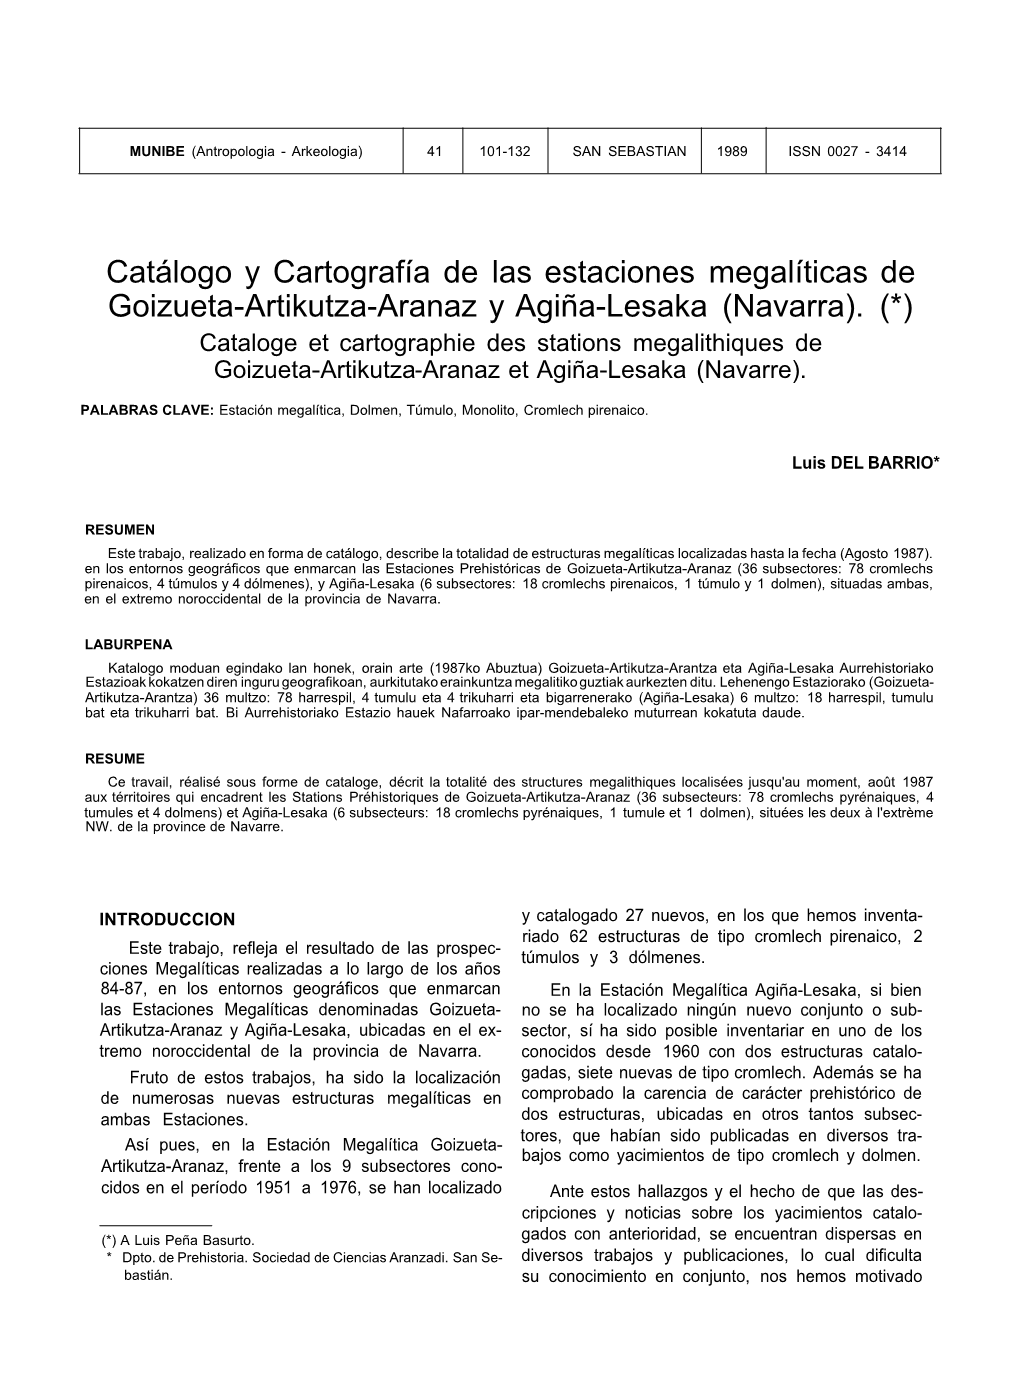 Catálogo Y Cartografía De Las Estaciones Megalíticas De Goizueta-Artikutza-Aranaz Y Agiña-Lesaka (Navarra)